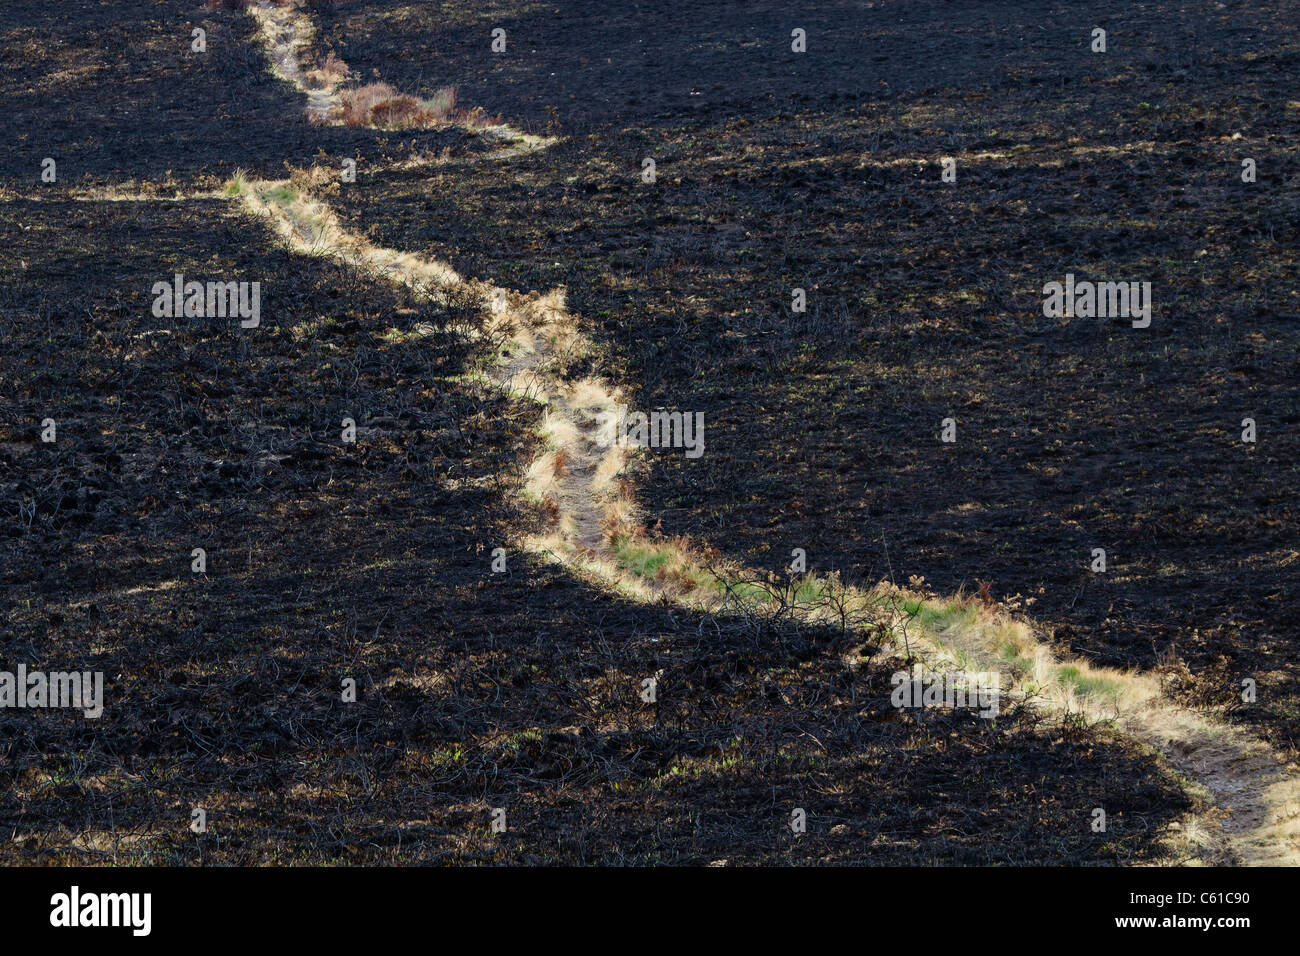 Footpath across burnt heathland. Upton Heath, Dorset, UK. Stock Photo